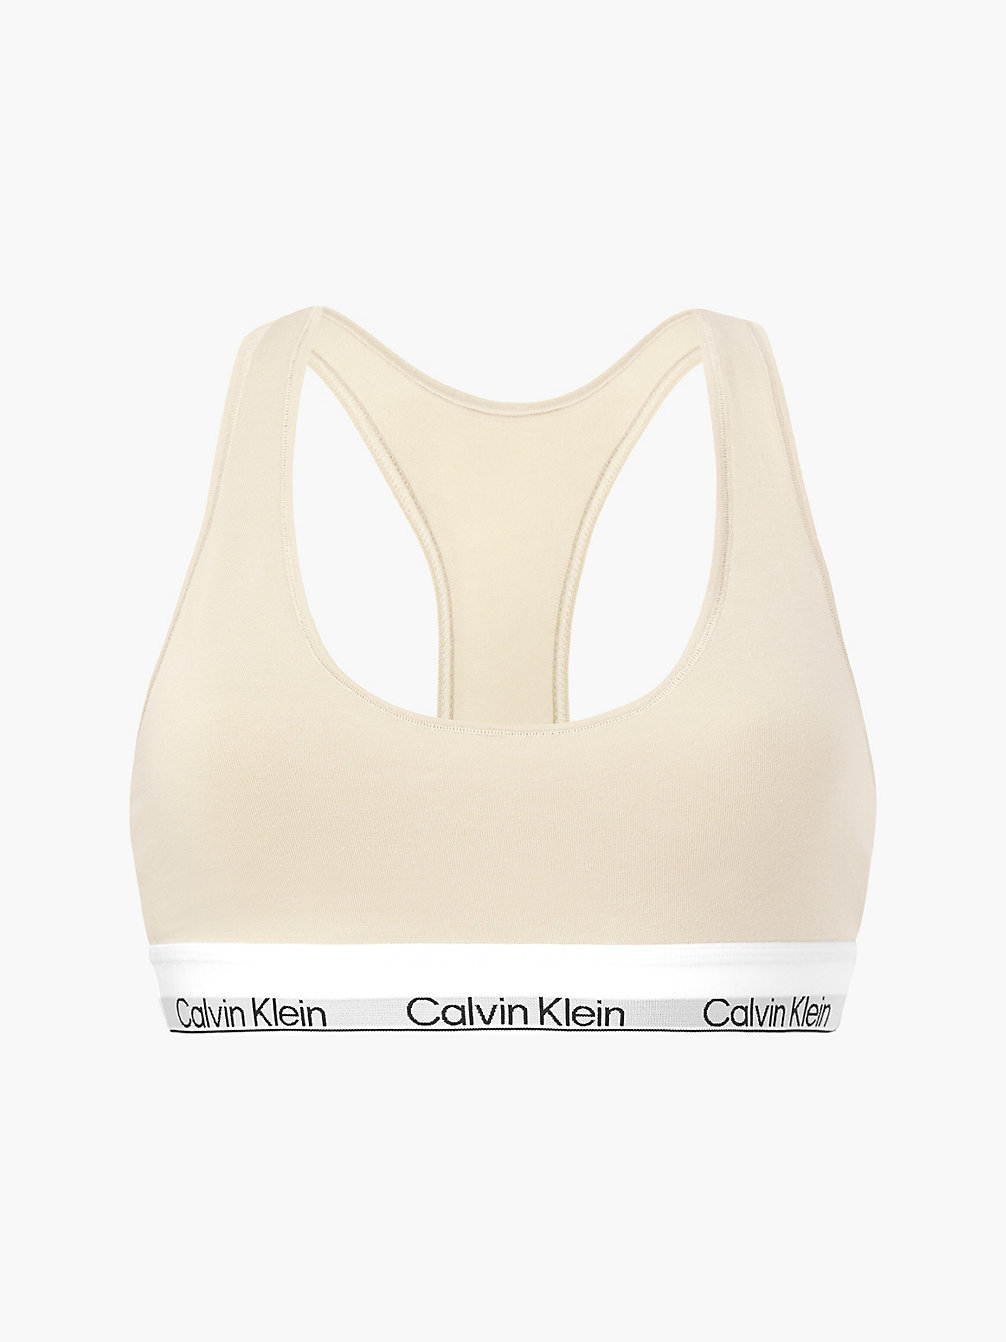 Brassière - Modern Cotton > STONE > undefined donna > Calvin Klein